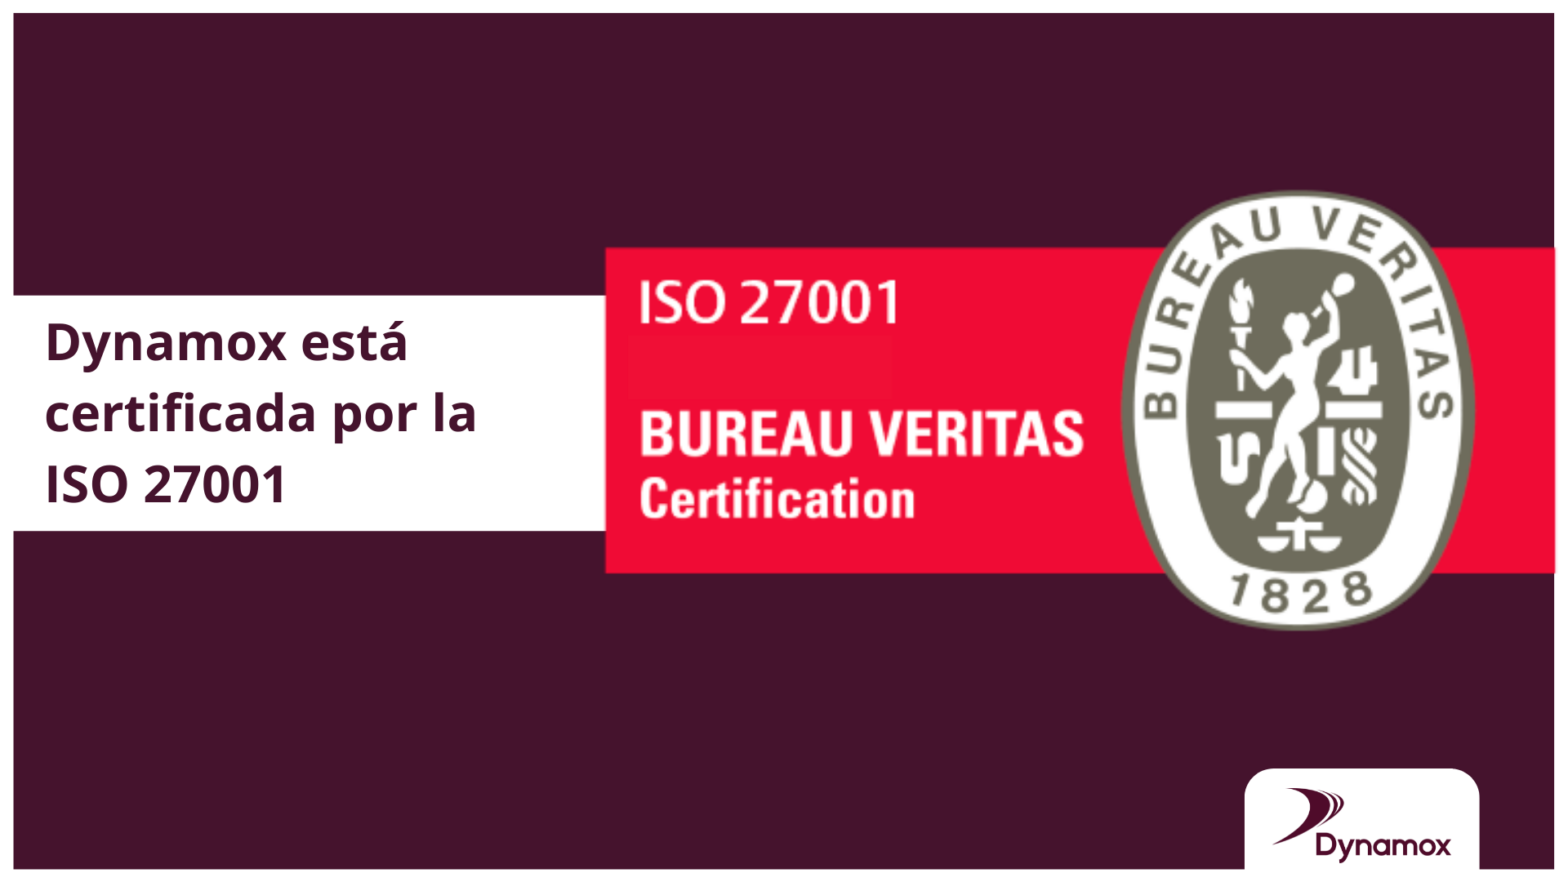 Dynamox está certificada por la ISO 27001